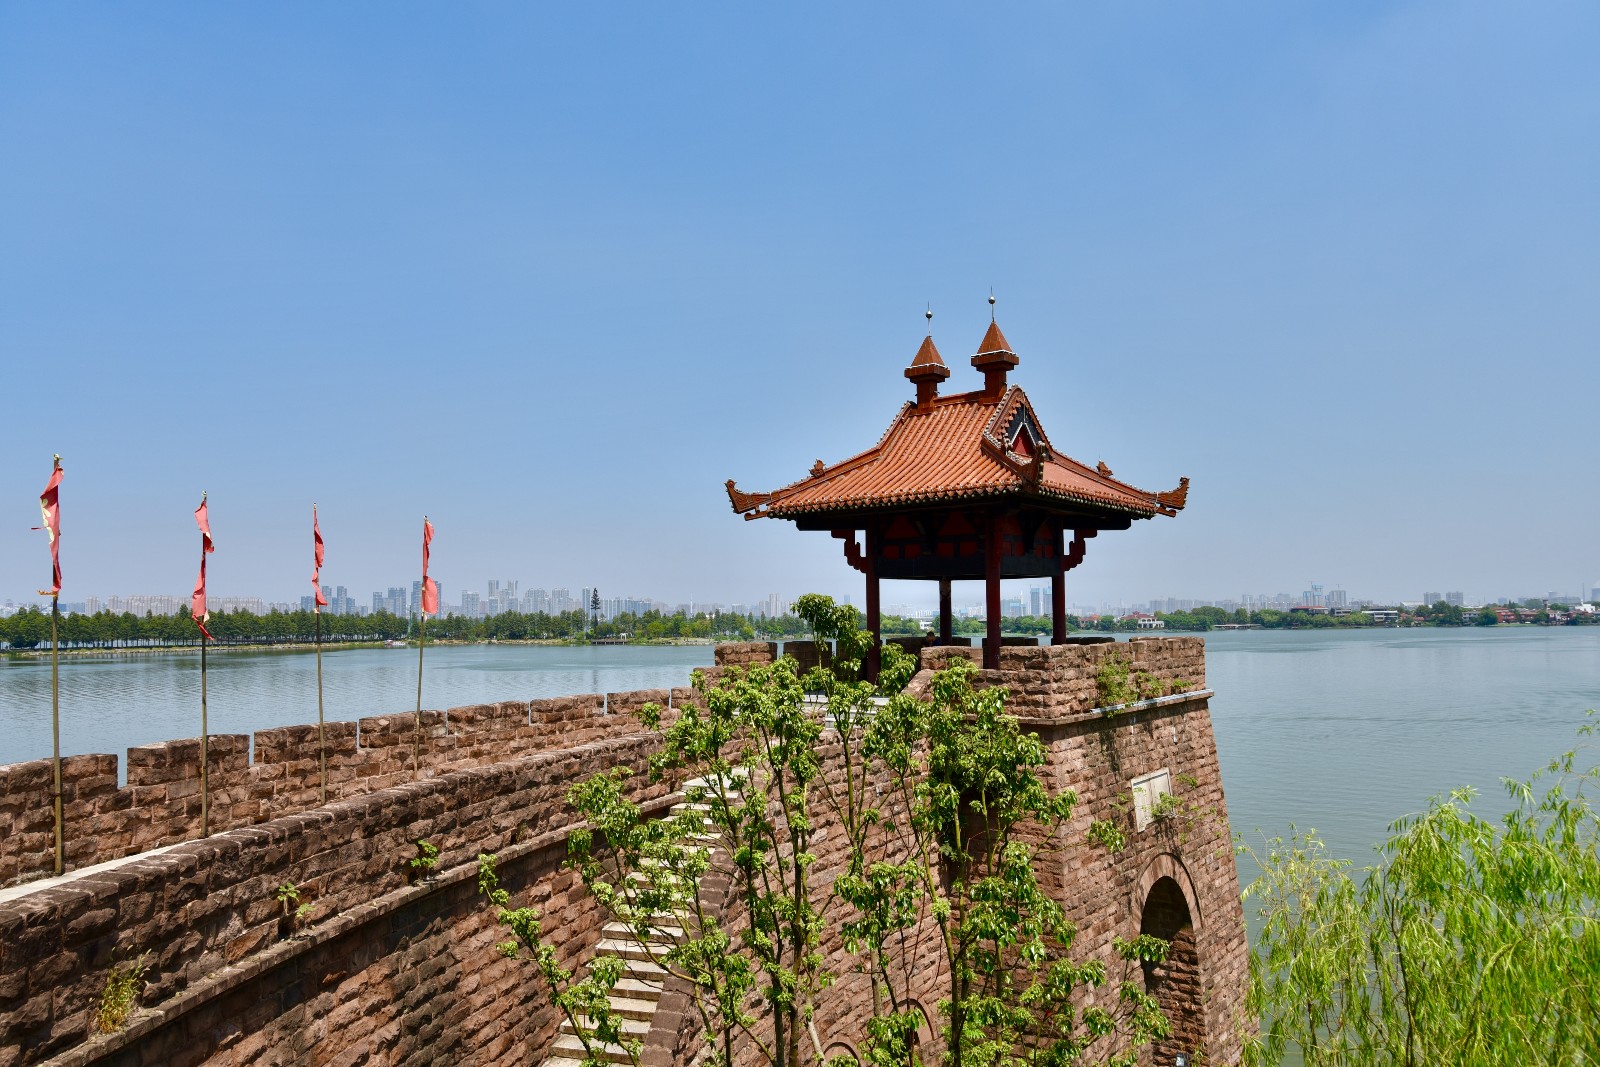 【携程攻略】武汉东湖磨山景区景点,讲述楚文化历史的一个风景区，分楚城、楚市、楚才园等多个小景区。门…